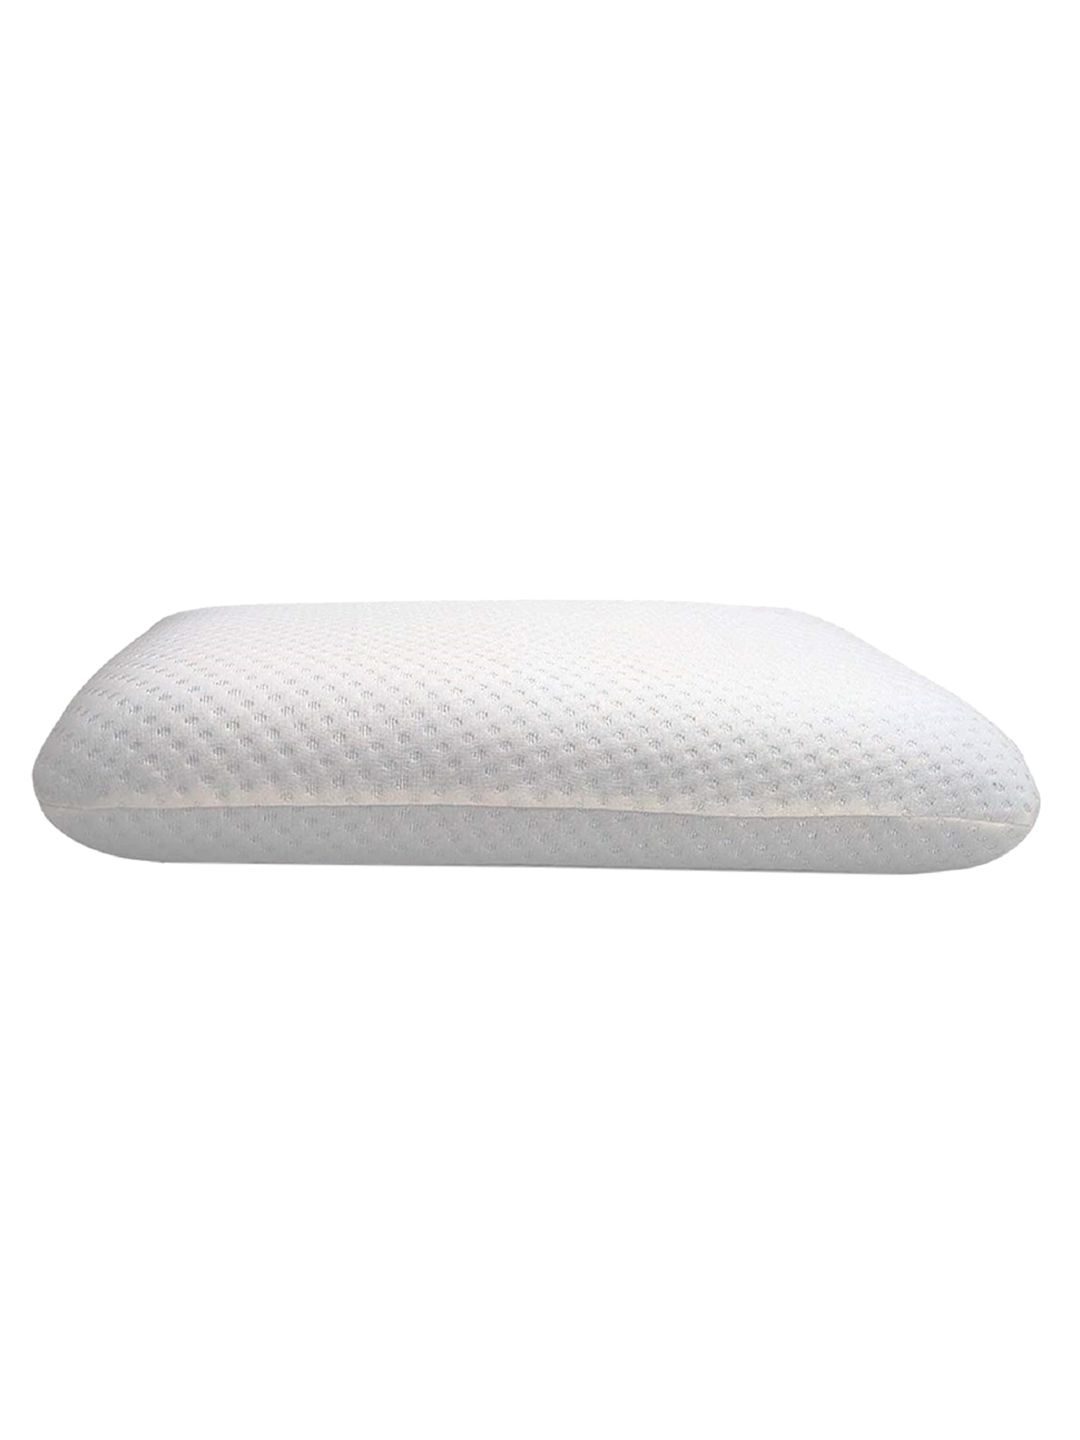 Pum Pum White Solid Memory Foam Regular Pillows Price in India